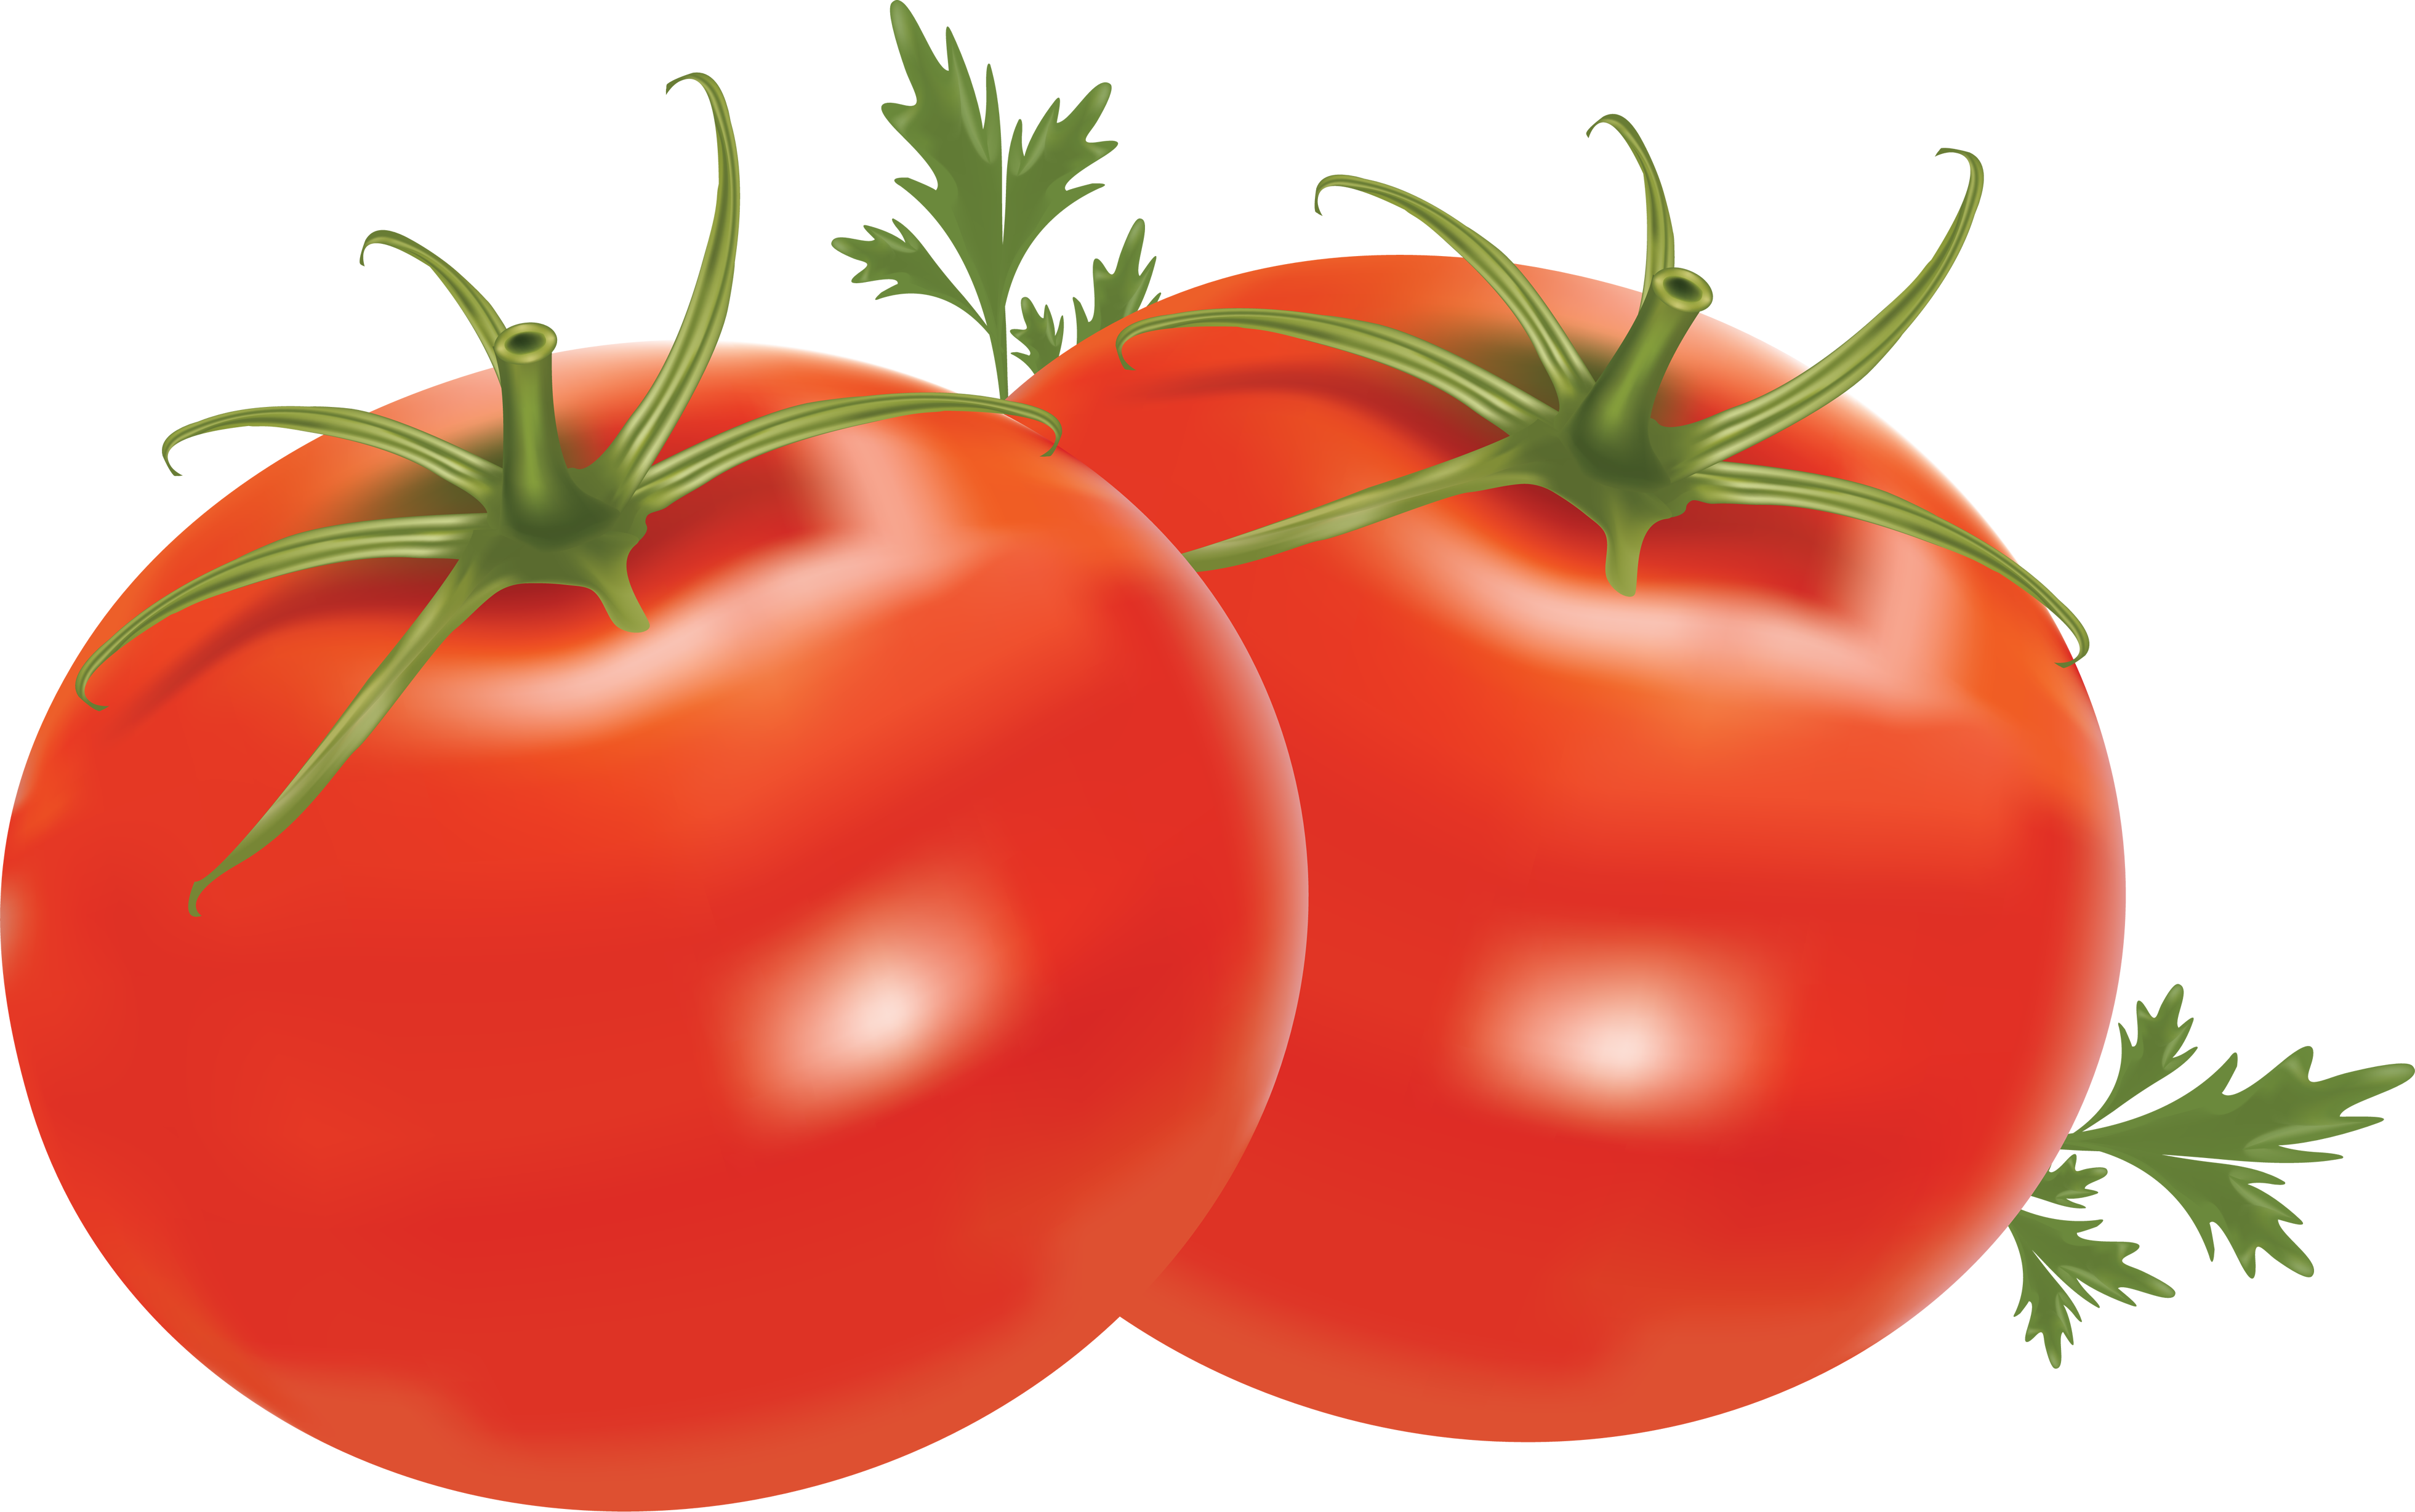 Two tomatoes. Помидоры черри сбоку. Помидор для детей. Помидор на прозрачном фоне. Помидор для дошкольников.